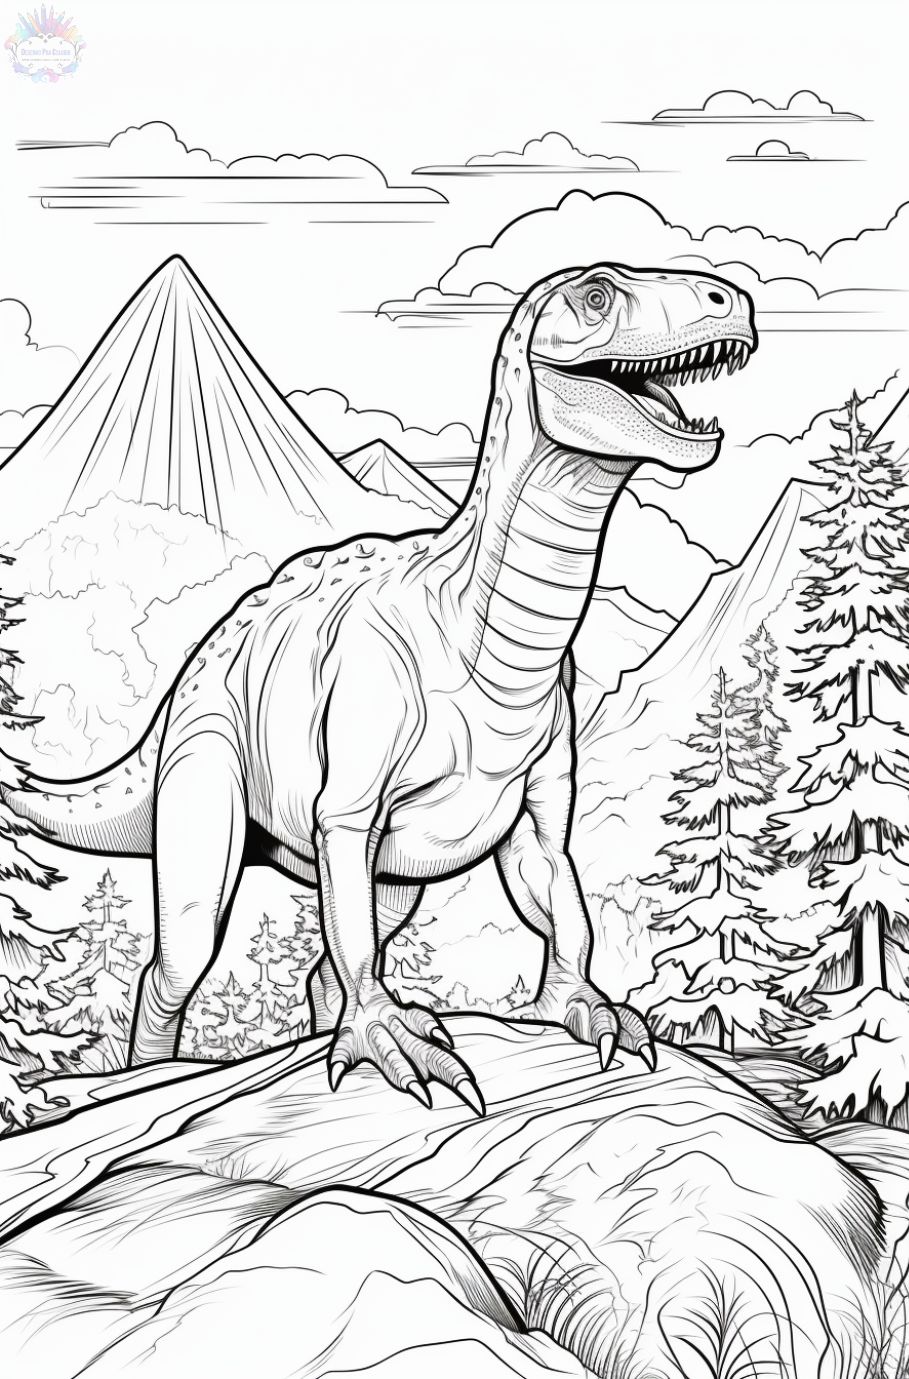 Dinossauro – Colorindo dinossauros - Cartoons for Kids – Aprenda a pintar Tiranossauro  Rex - T Rex 